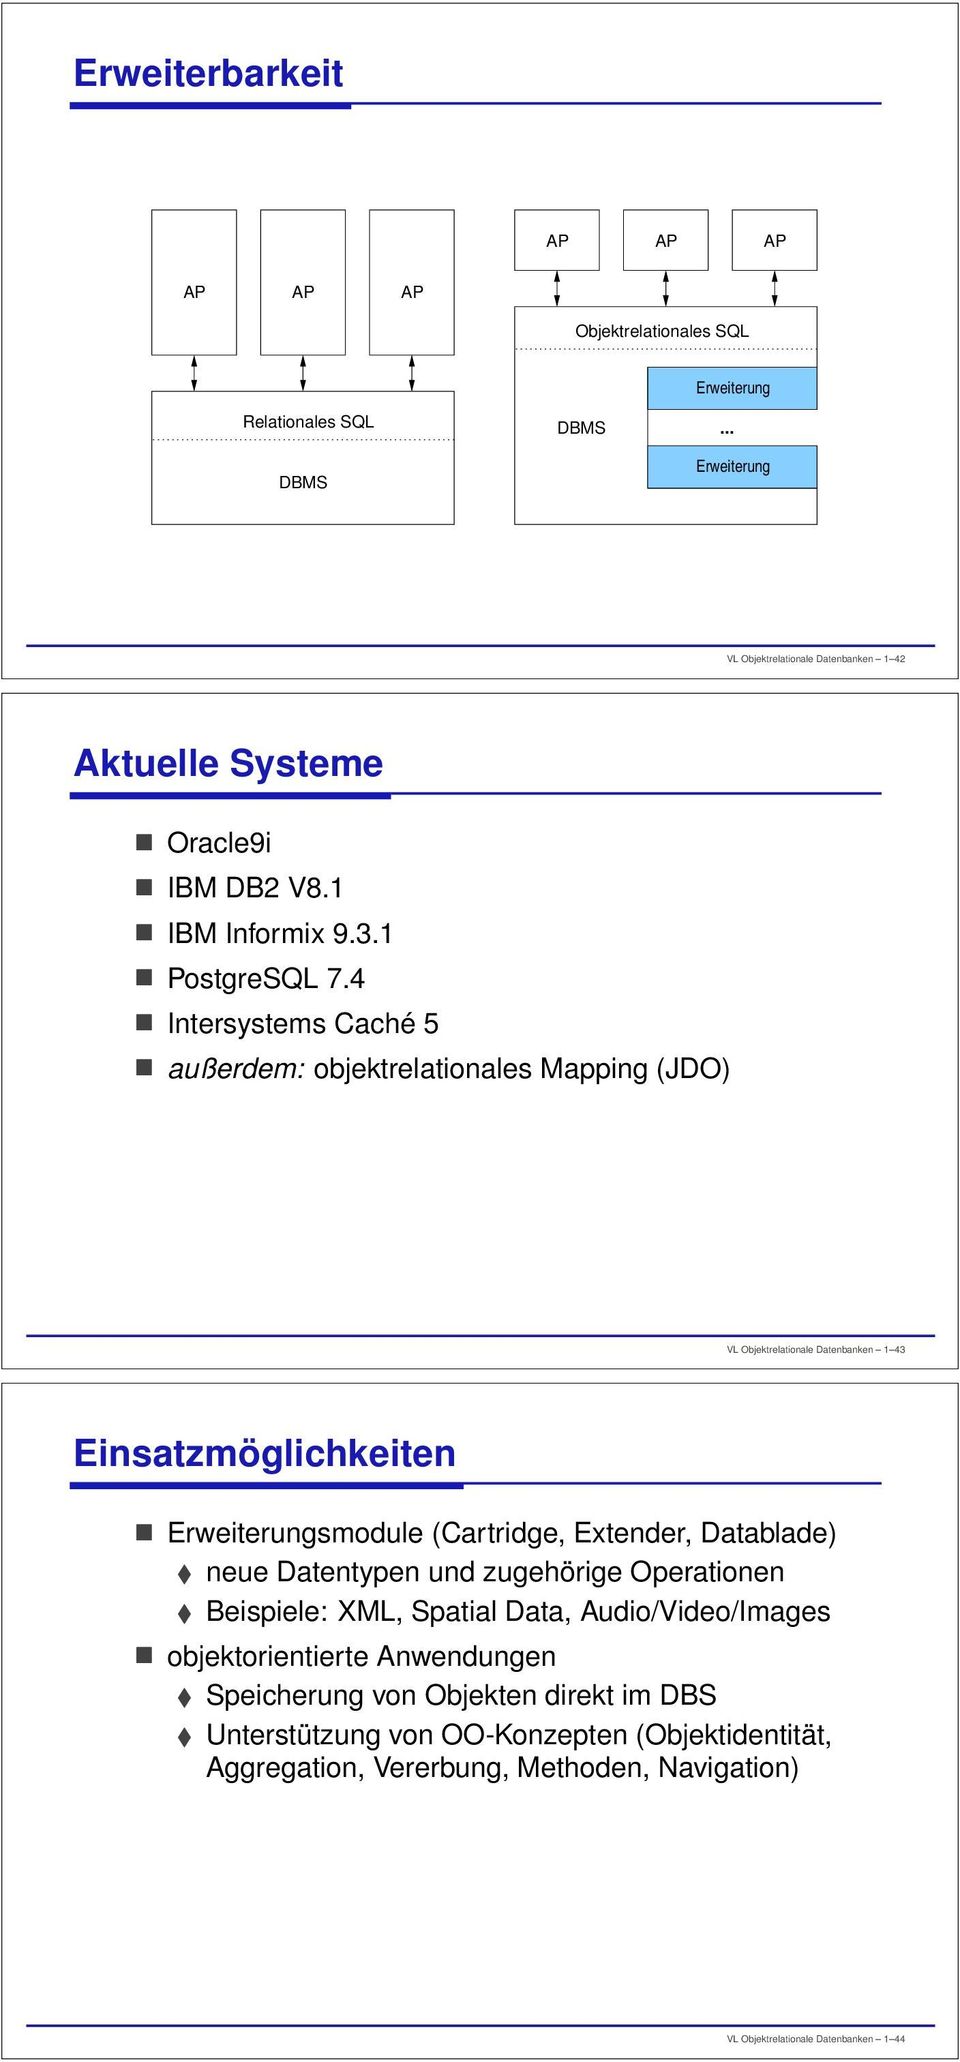 4 Intersystems Caché 5 außerdem: objektrelationales Mapping (JDO) VL Objektrelationale Datenbanken 1 43 Einsatzmöglichkeiten Erweiterungsmodule (Cartridge, Extender,